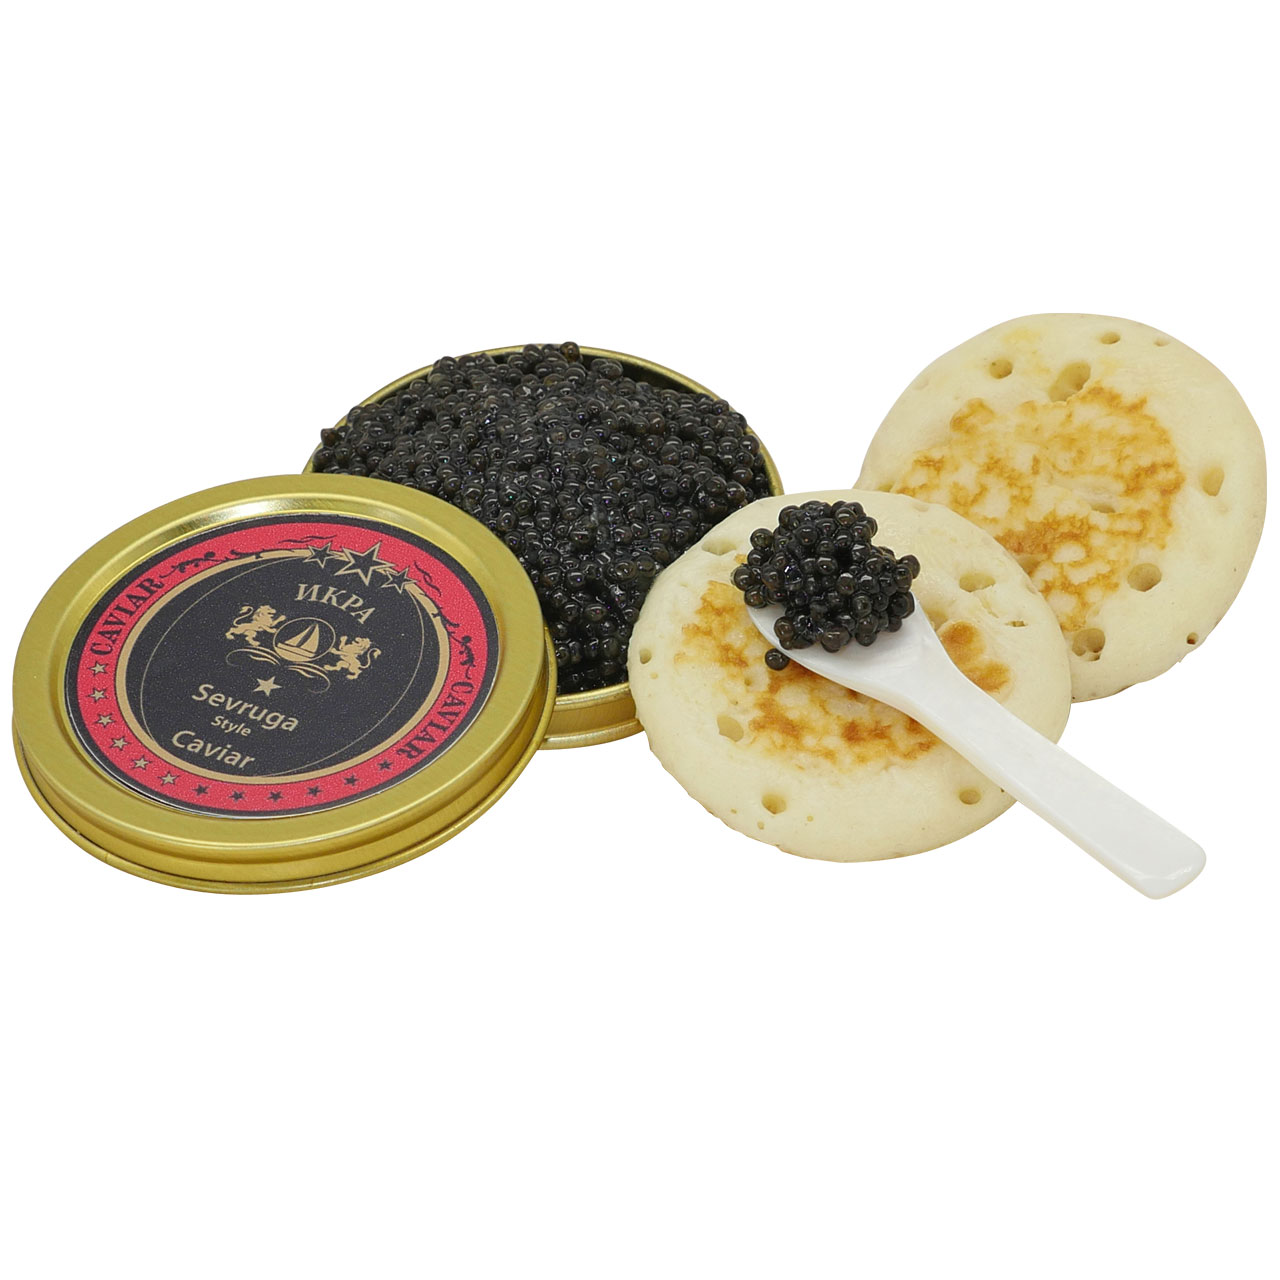 Kaviar vom sibirischen Stör 50g + 50g Gratis